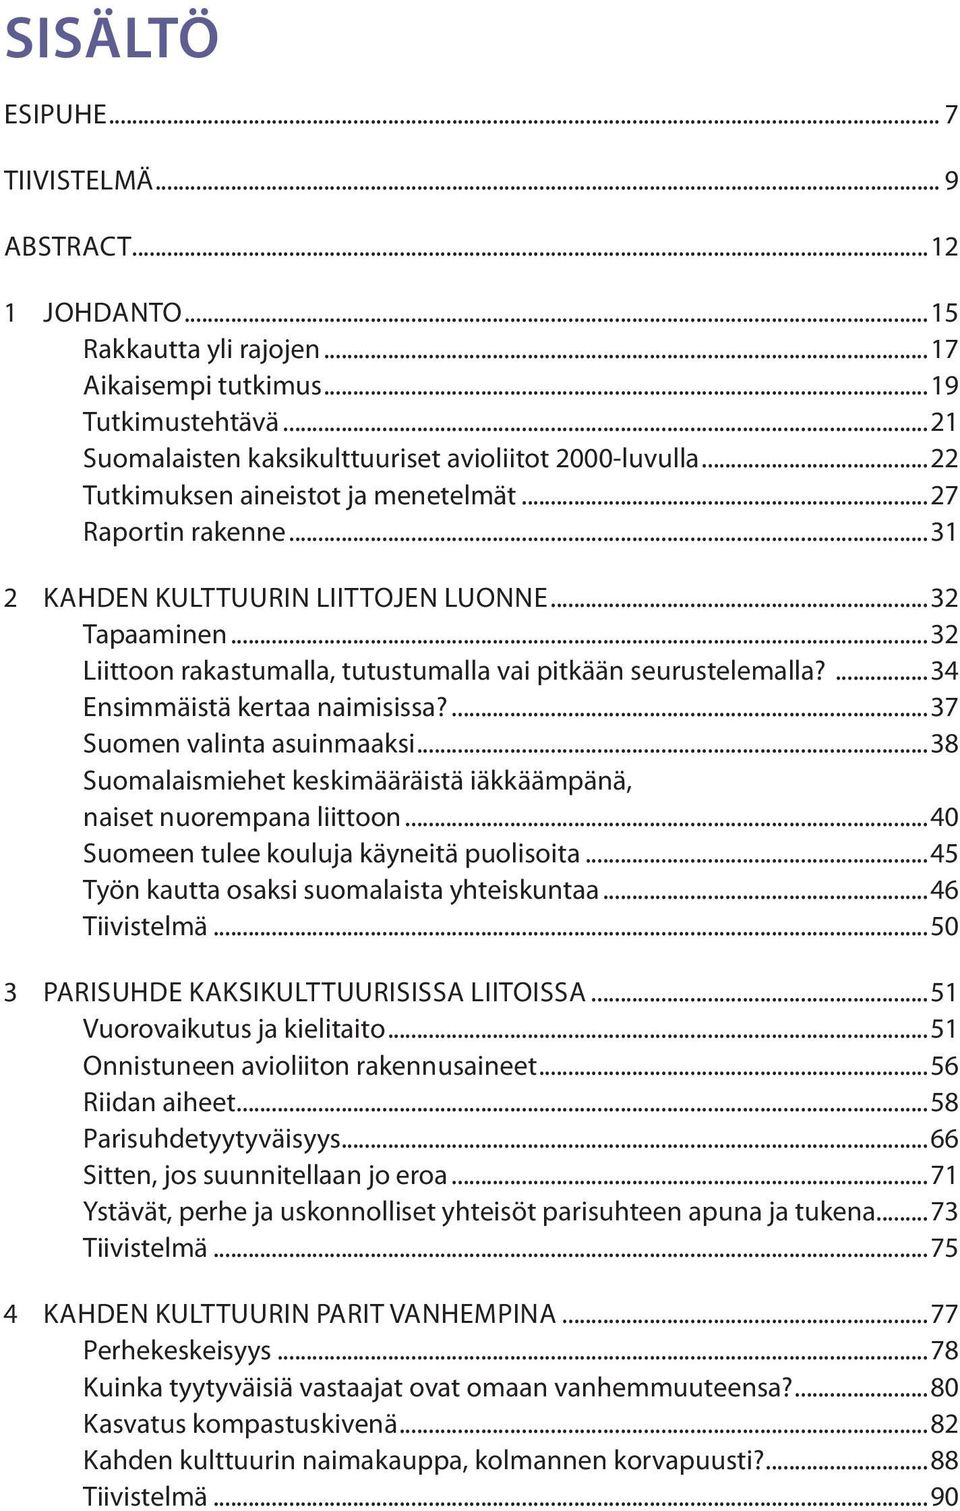 ...34 Ensimmäistä kertaa naimisissa?...37 Suomen valinta asuinmaaksi...38 Suomalaismiehet keskimääräistä iäkkäämpänä, naiset nuorempana liittoon...40 Suomeen tulee kouluja käyneitä puolisoita.